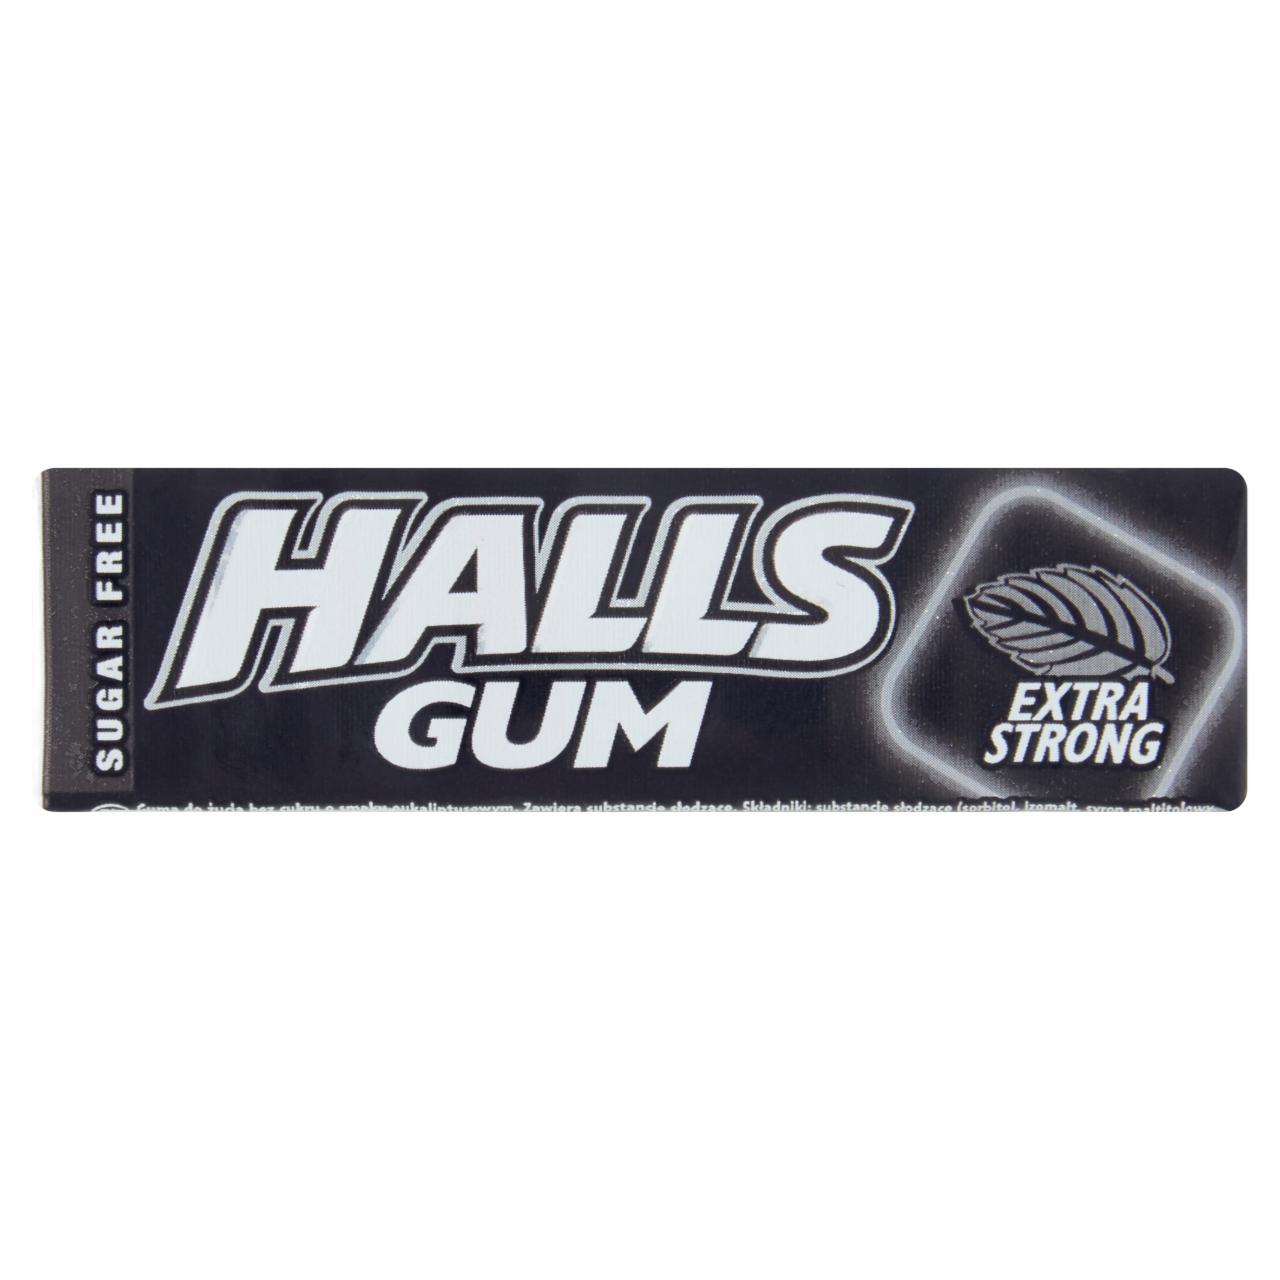 Zdjęcia - Halls Gum Guma do żucia bez cukru o smaku eukaliptusowym 14 g